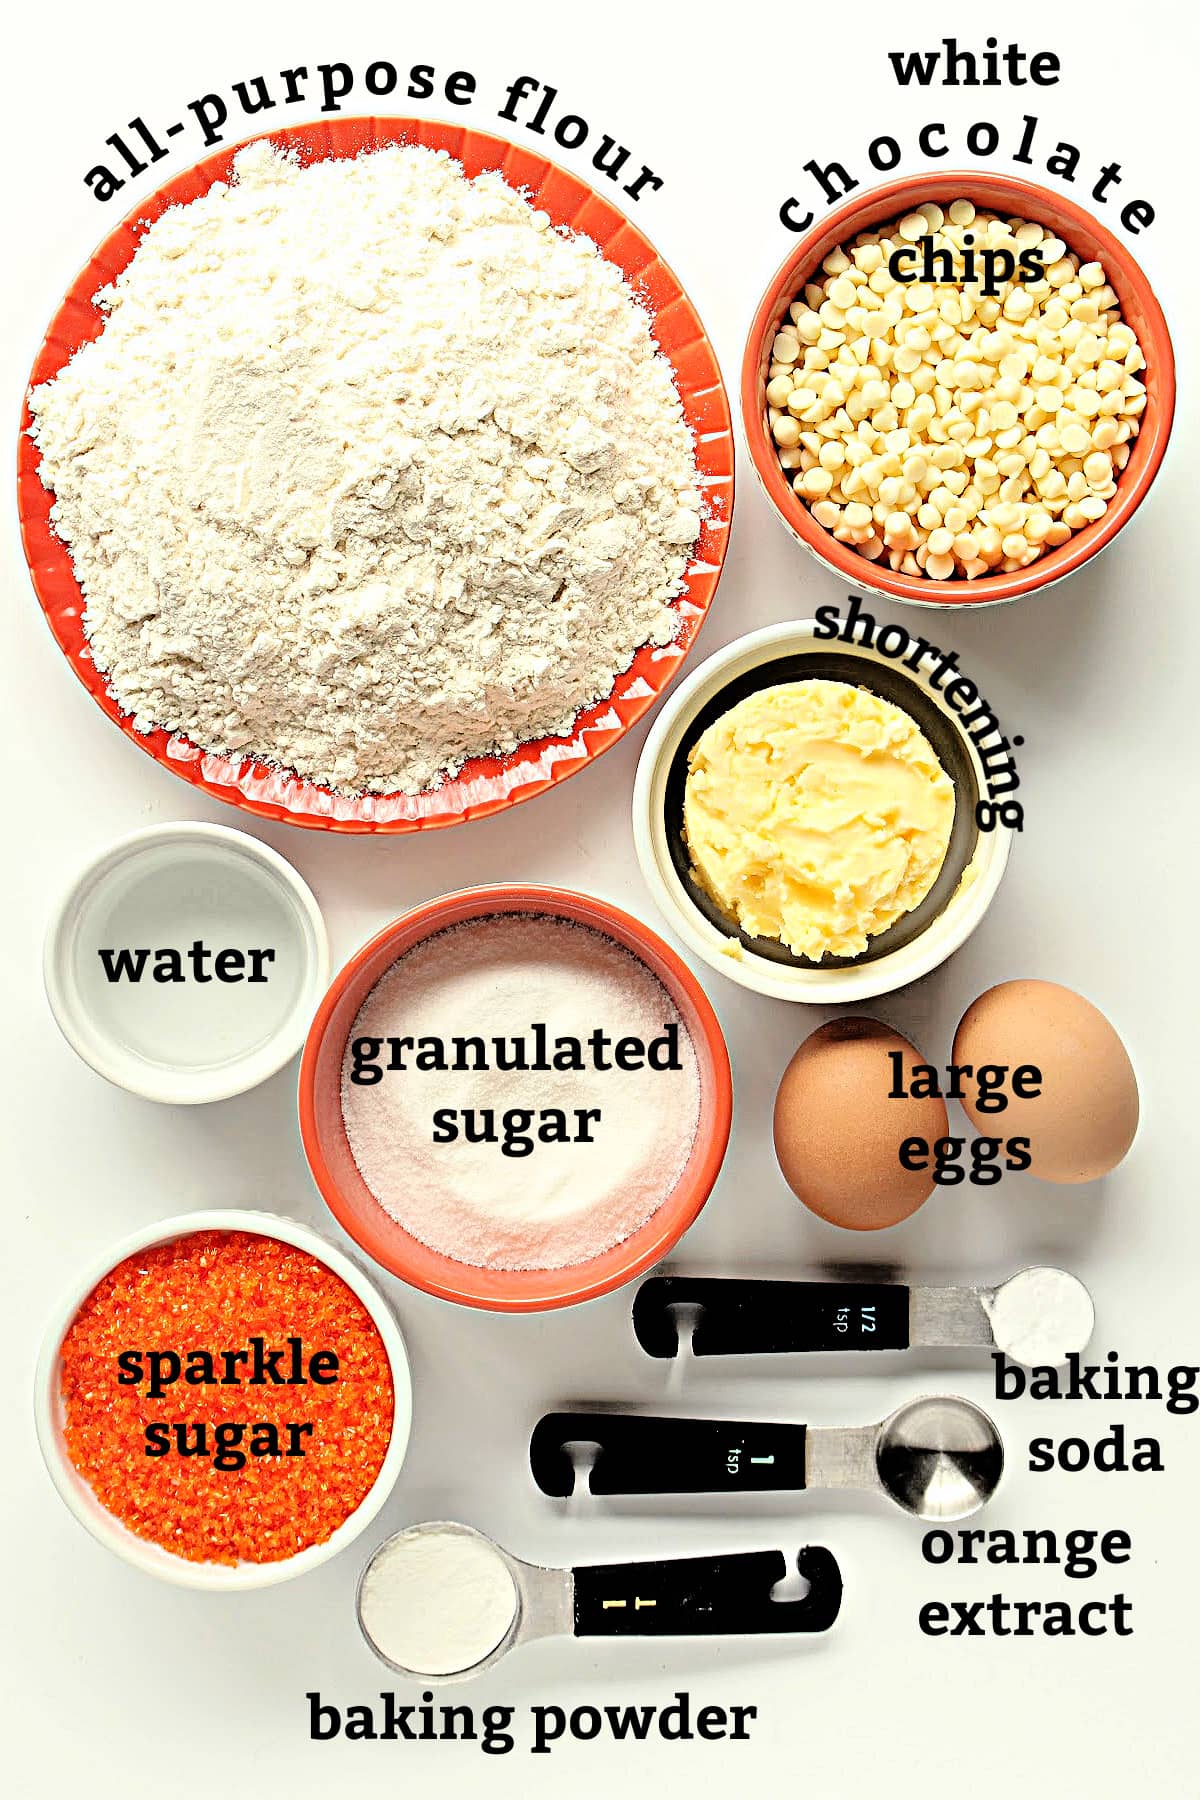 Recipe ingredients; flour, white chocolate chips, shortening, water, sugar, eggs, baking soda, baking powder, orange extract.